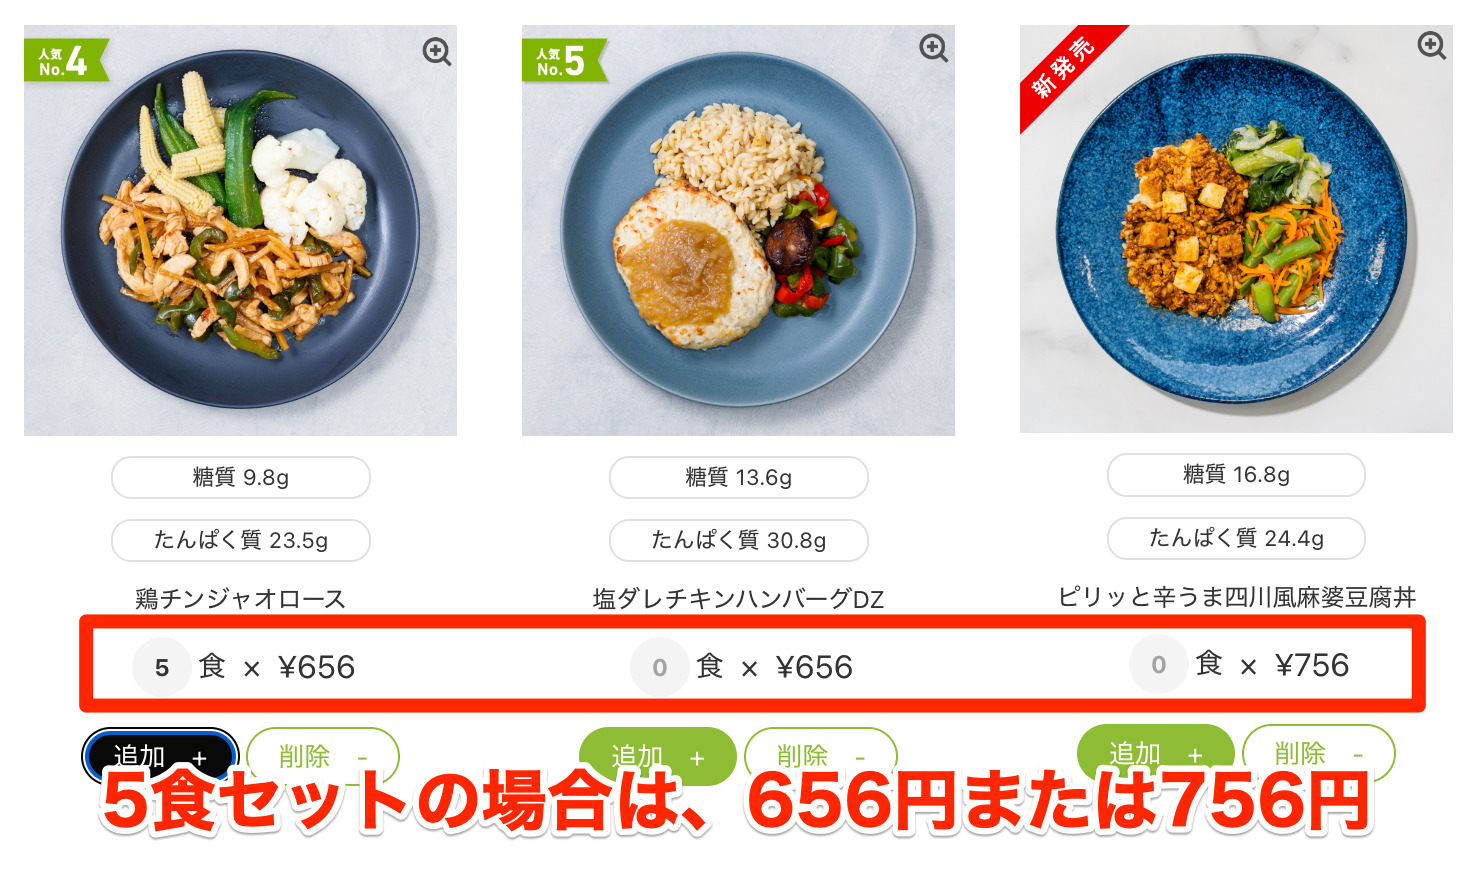 5食セットをオーダーする場合、1食あたりの値段は656円または756円